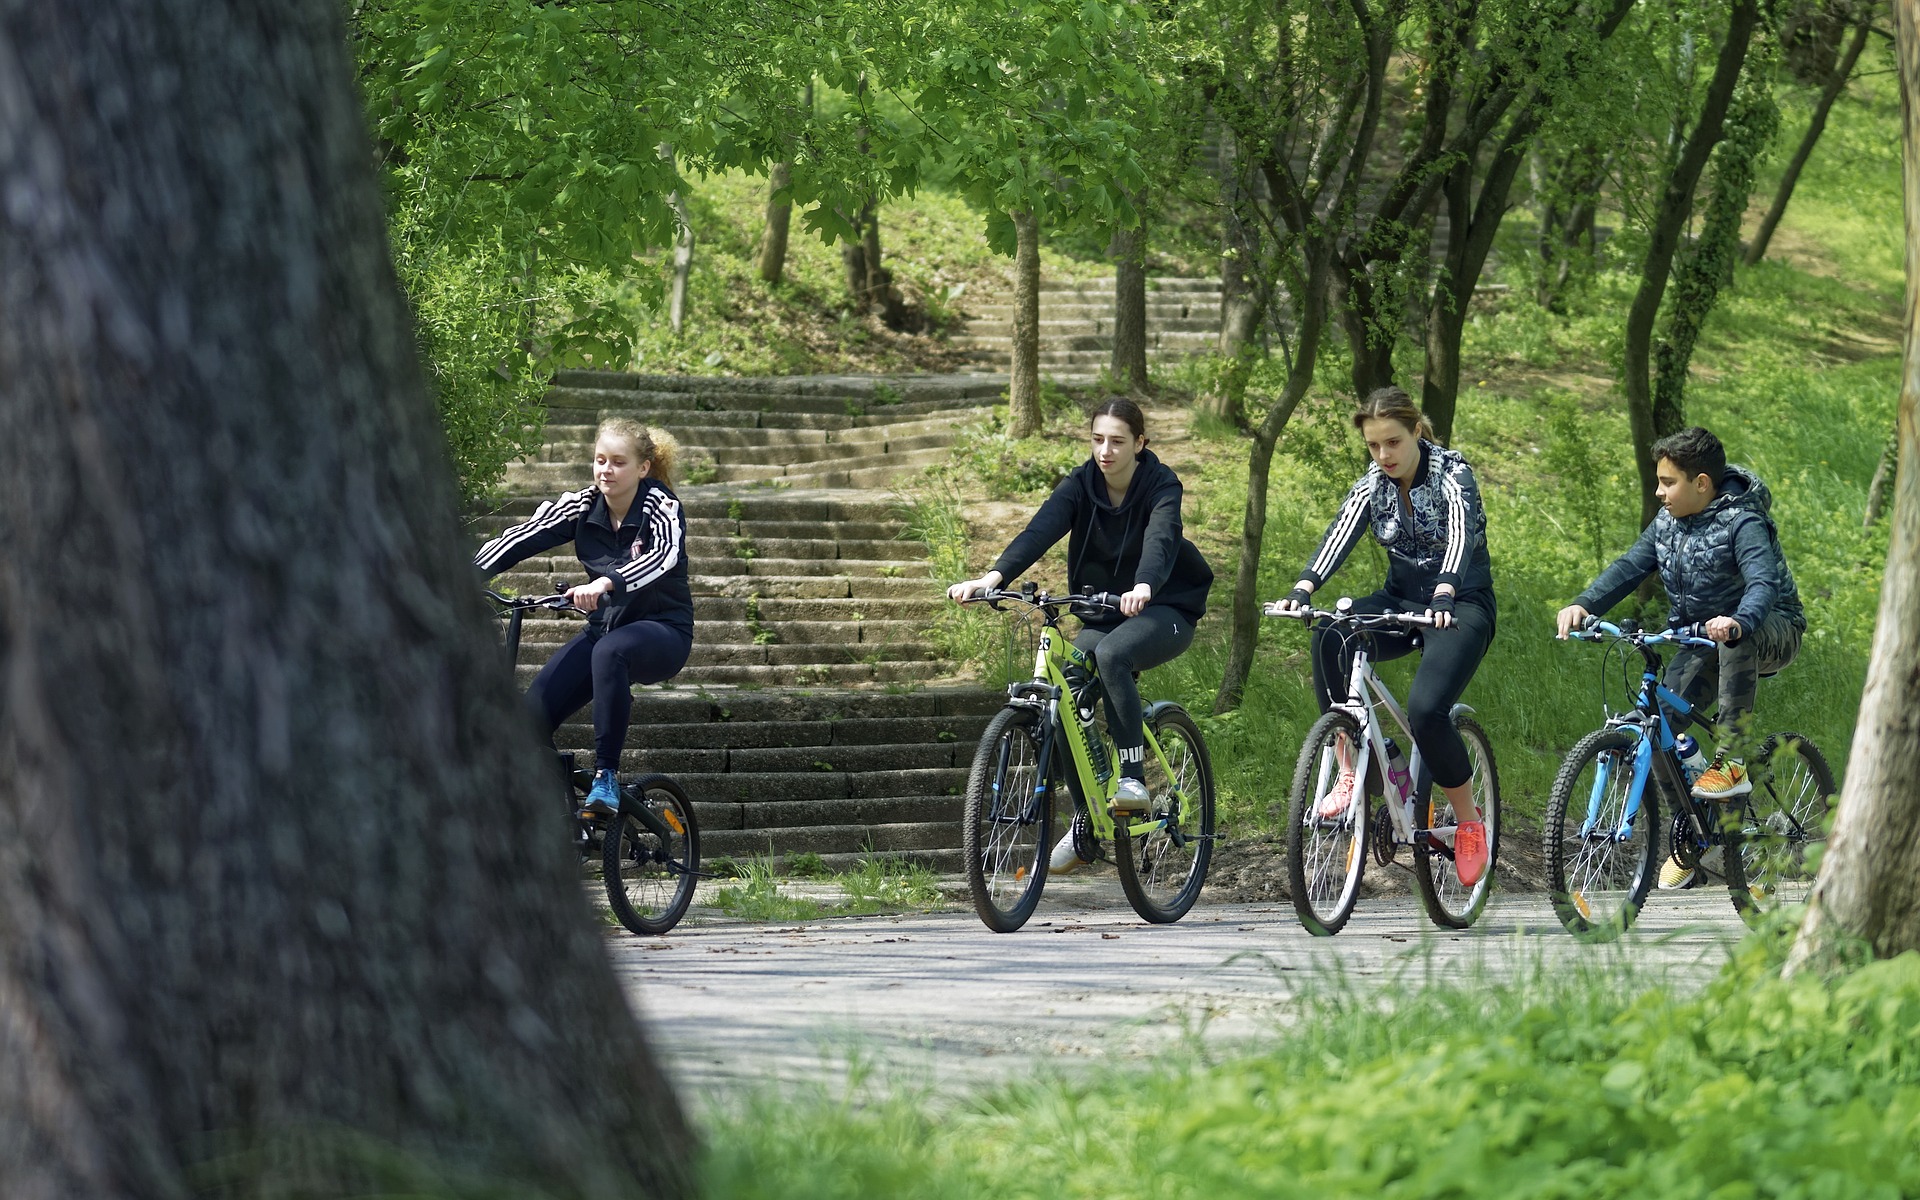 In città camminare, bici e trasporti pubblici restano le opzioni di mobilità più ecologiche rispetto agli scooter elettrici o ai viaggi in auto